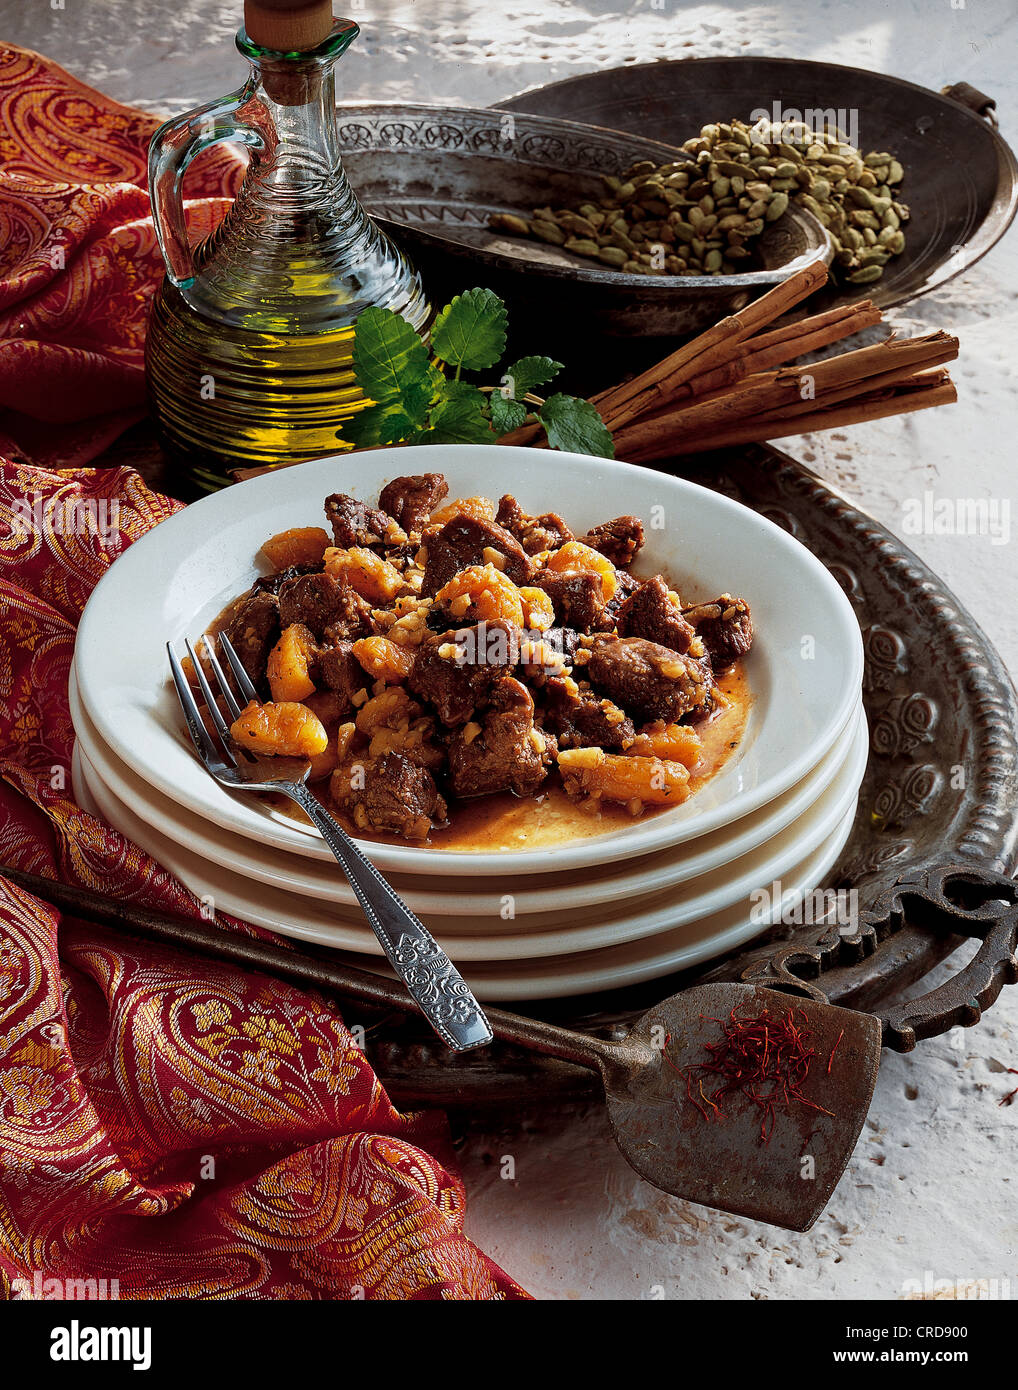 Süßer Lammeintopf mit getrockneten Früchten, Mandeln und Gewürzen, herzhafter Eintopf, Algerien. Stockfoto